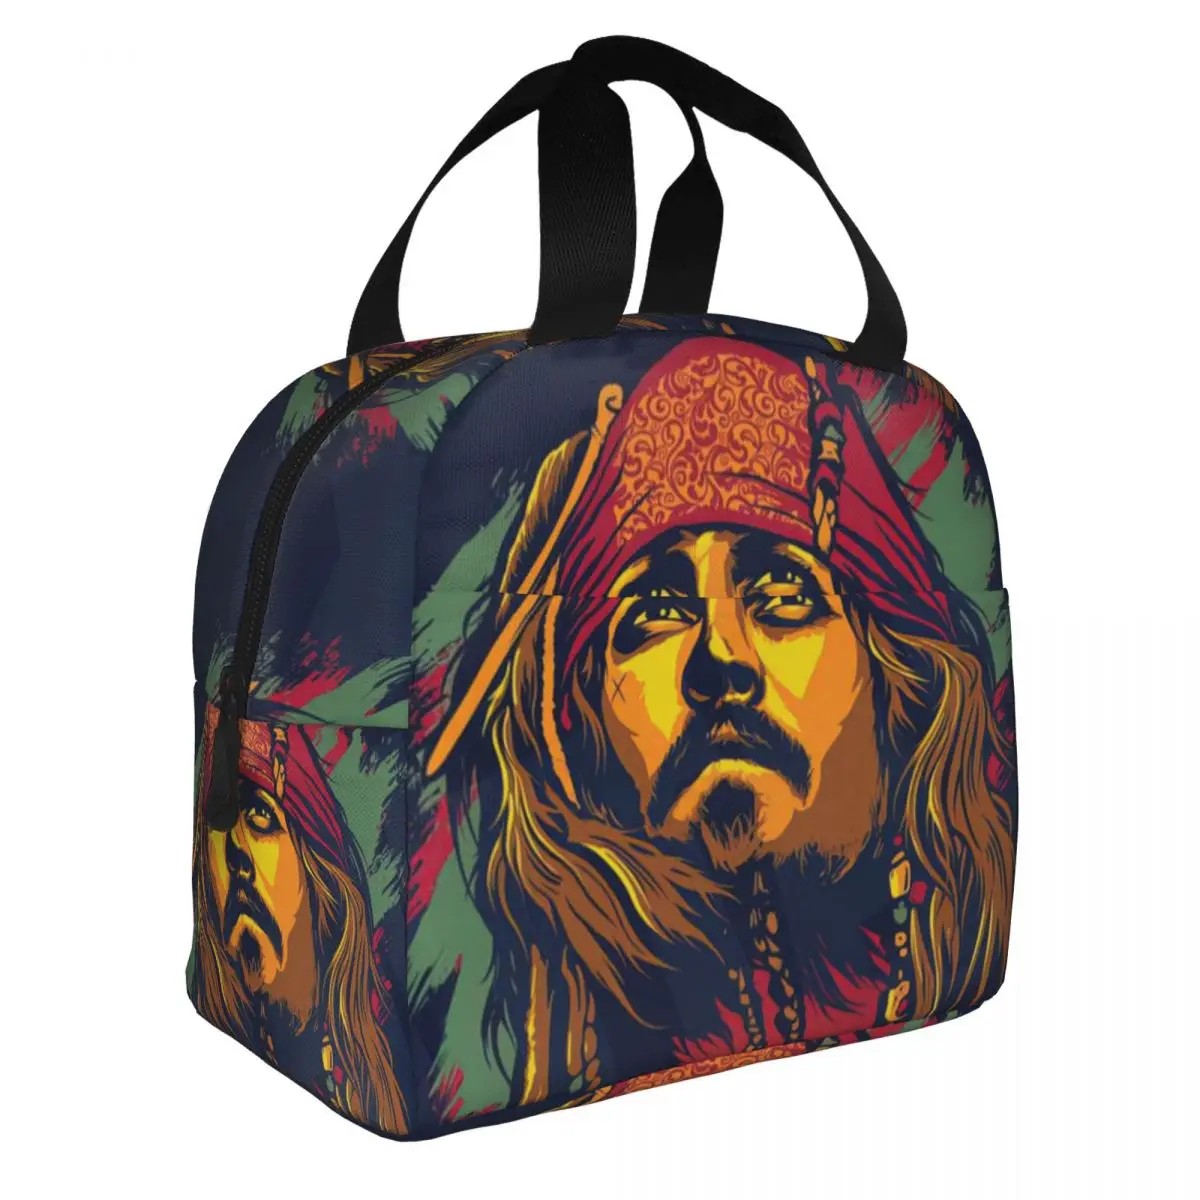 Пакеты для ланча Captain Jack Sparrow, переносная термосумка из алюминиевой фольги, утолщенная тканевая сумка для ланча для мальчиков и девочек